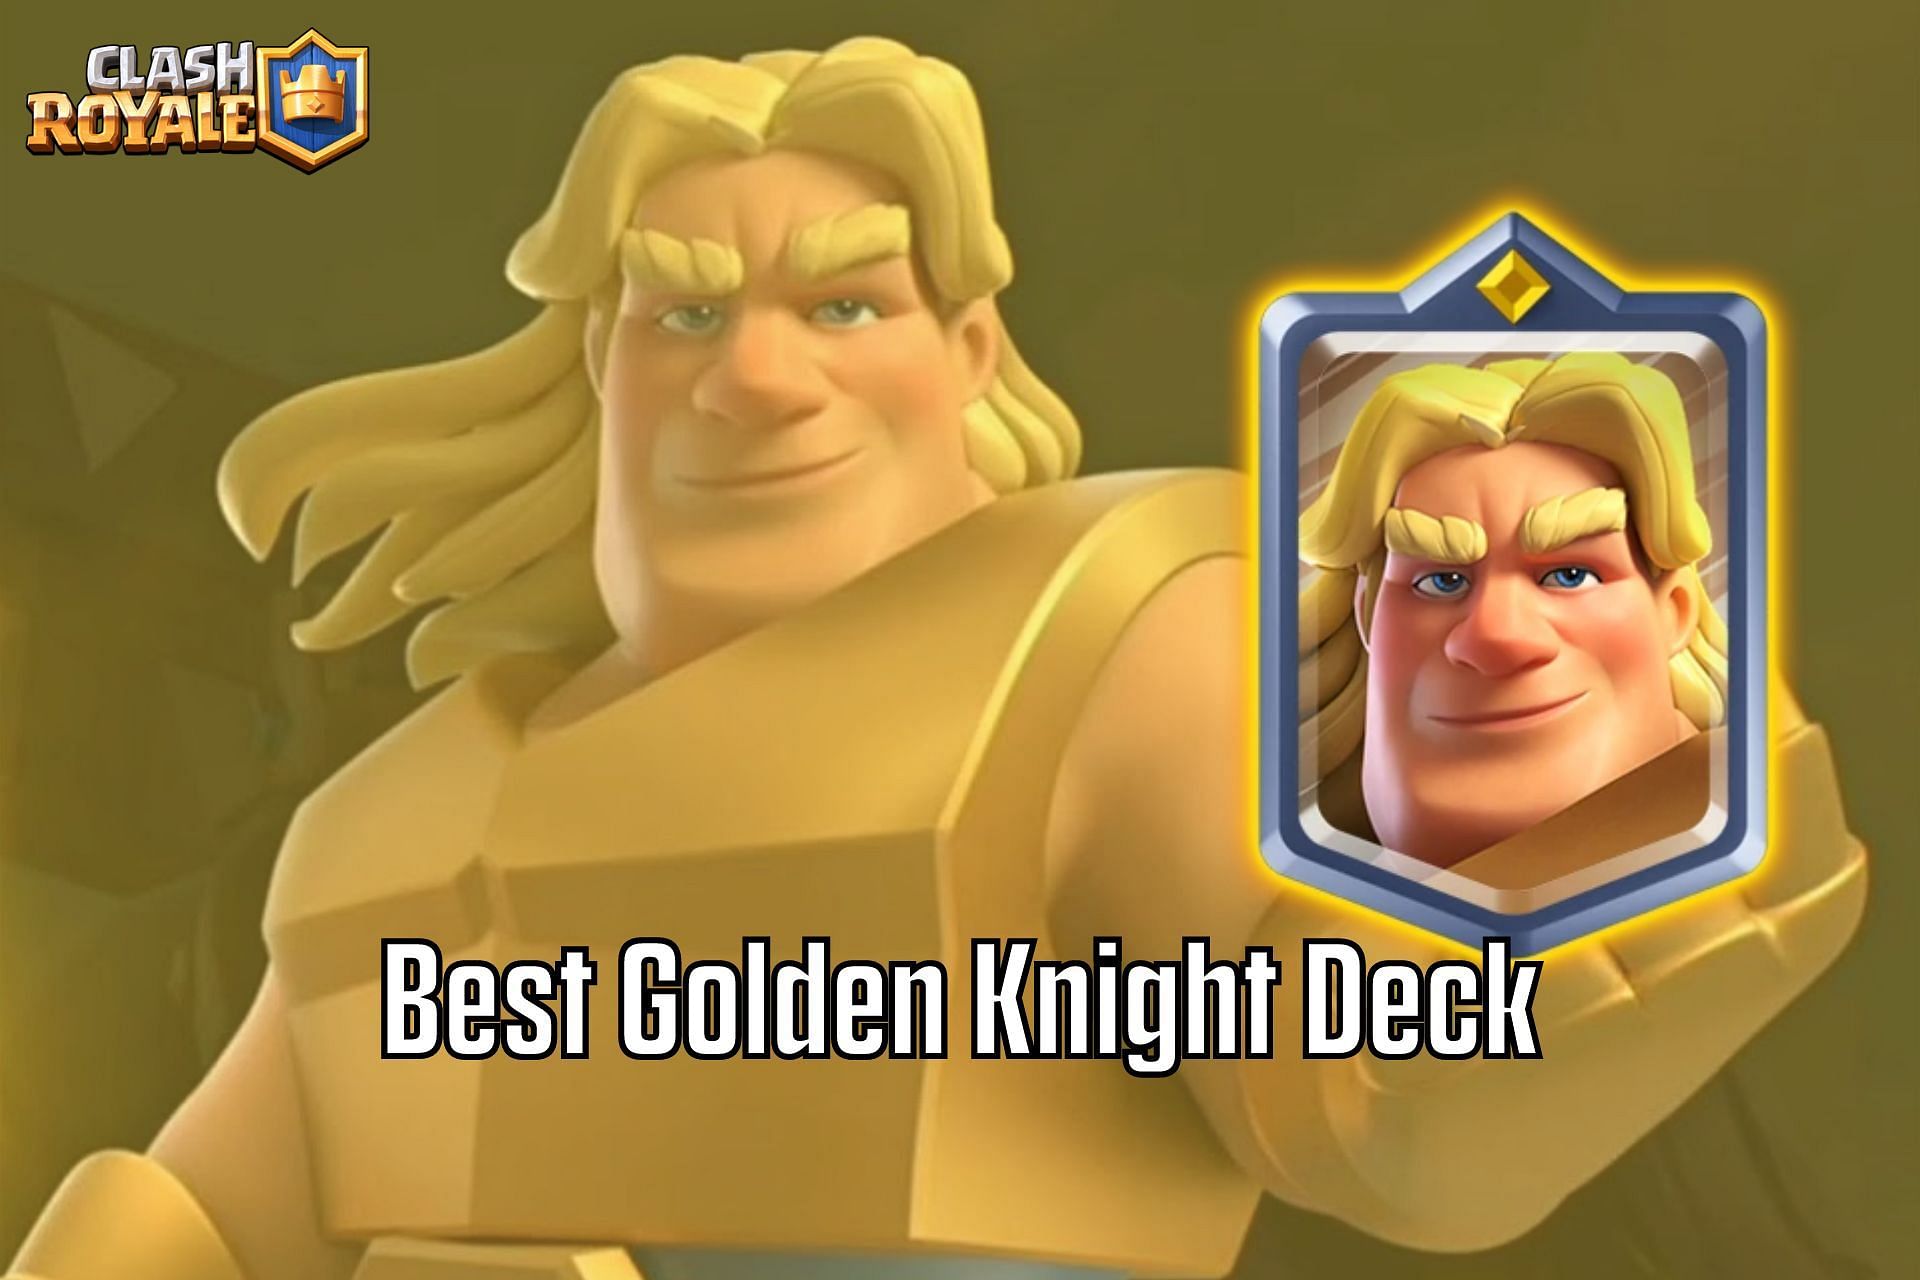 Golem Golden Knight Deck